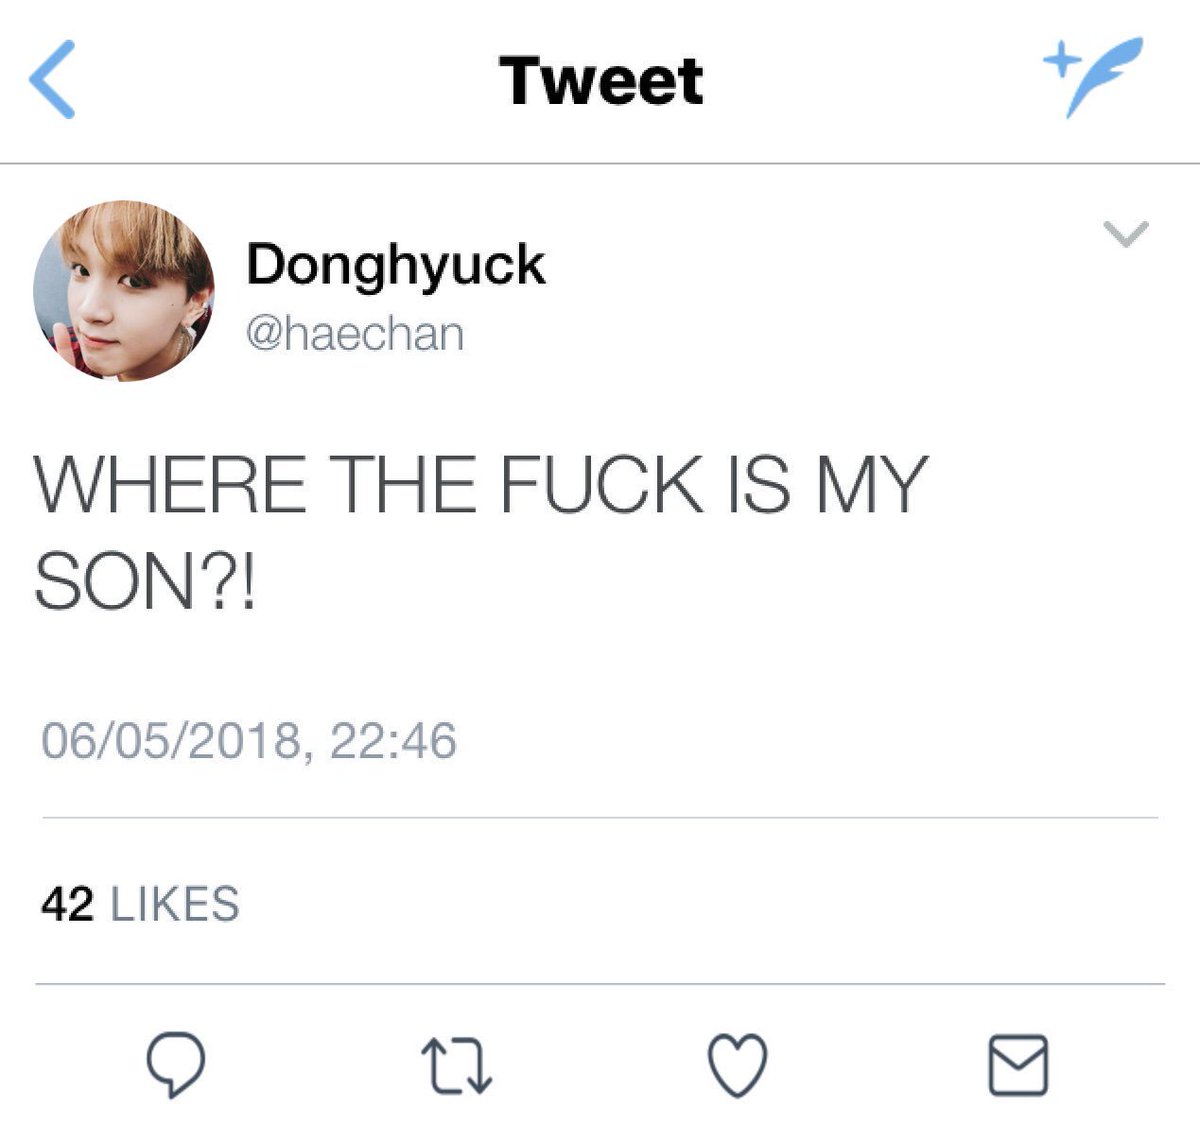 donghyuck finally responds